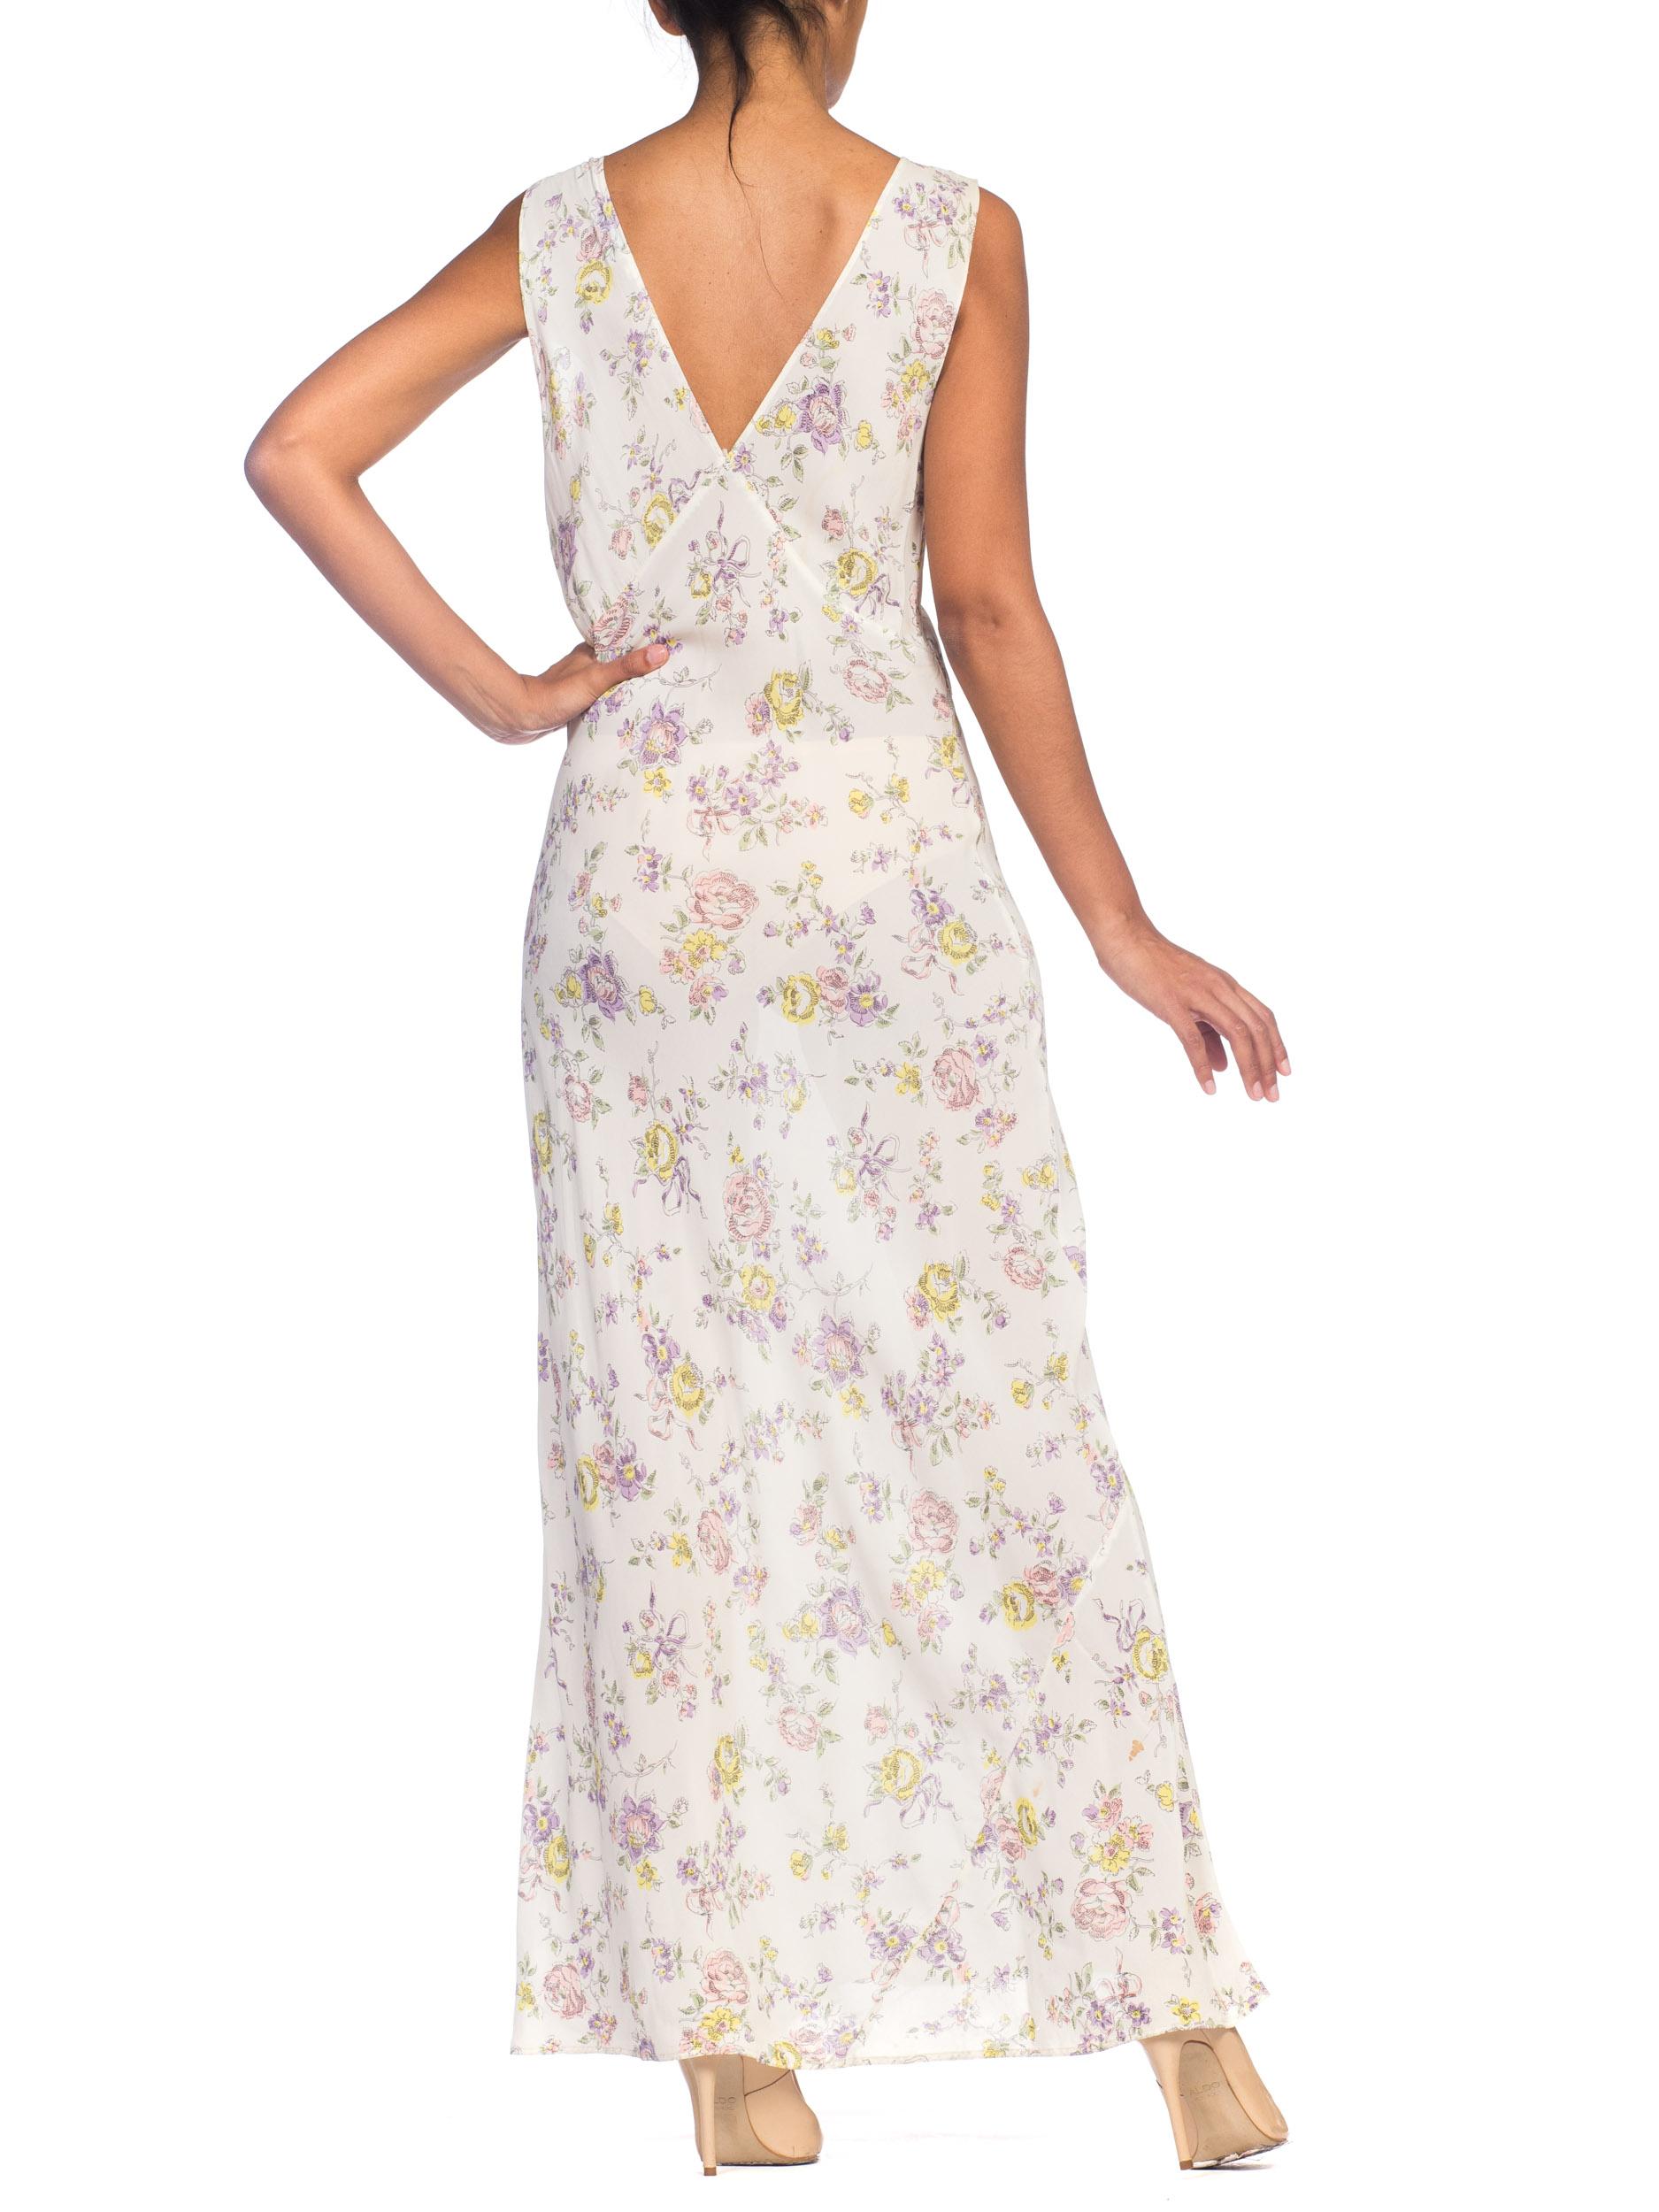 1930s Bias Cut Floral Rayon & Lace Negligee Slip Dress Damen